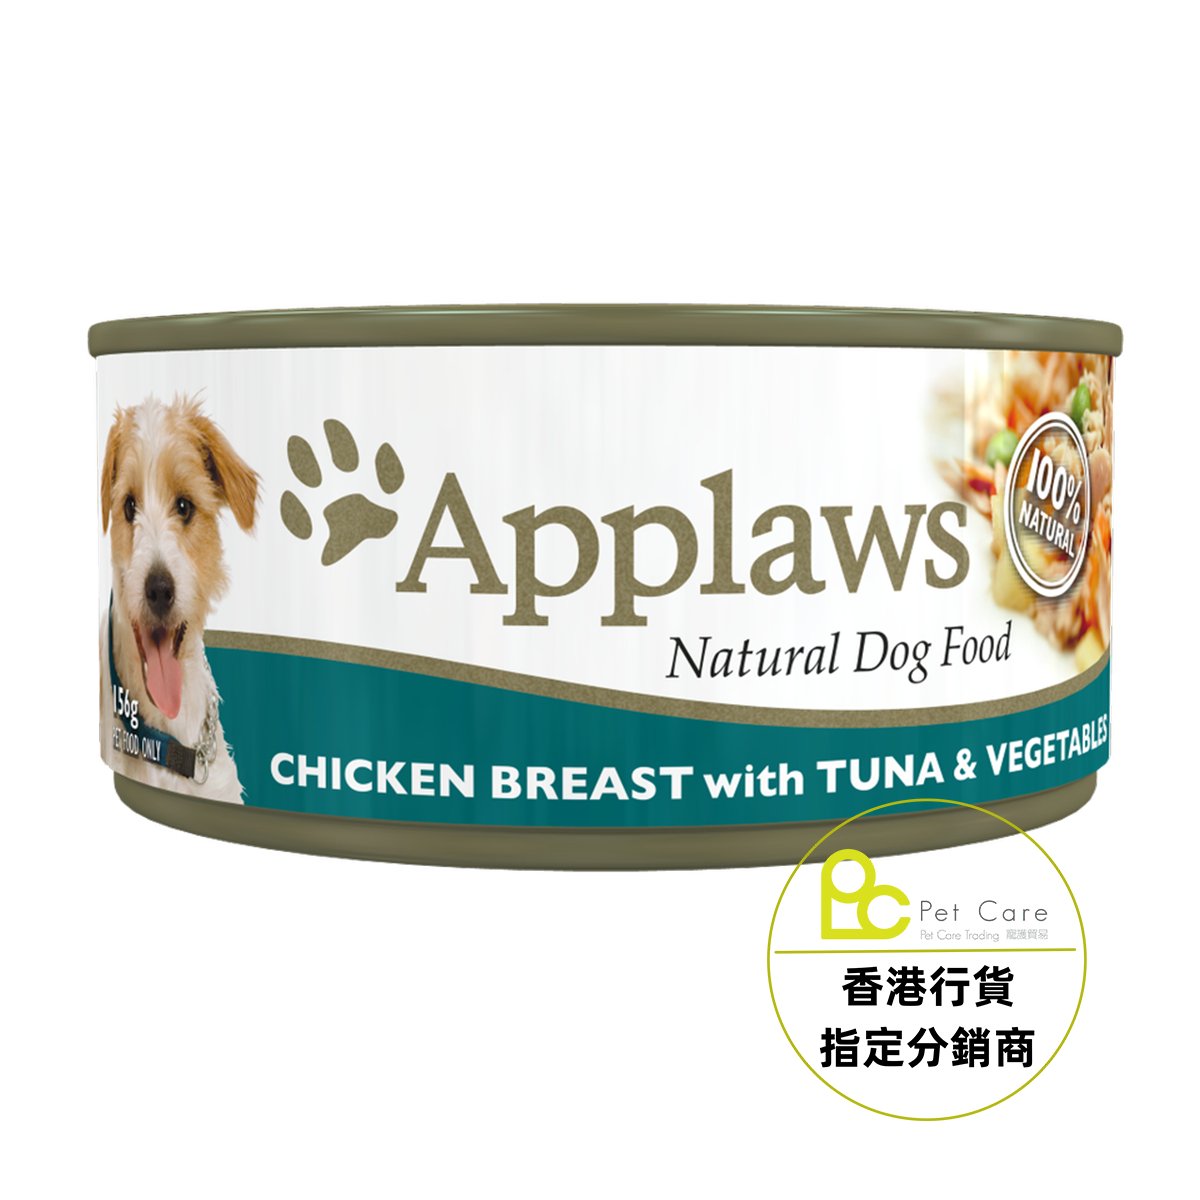 Applaws Dog 全天然 狗罐頭 - 雞柳 吞拿魚 蔬菜 156g - 幸福站